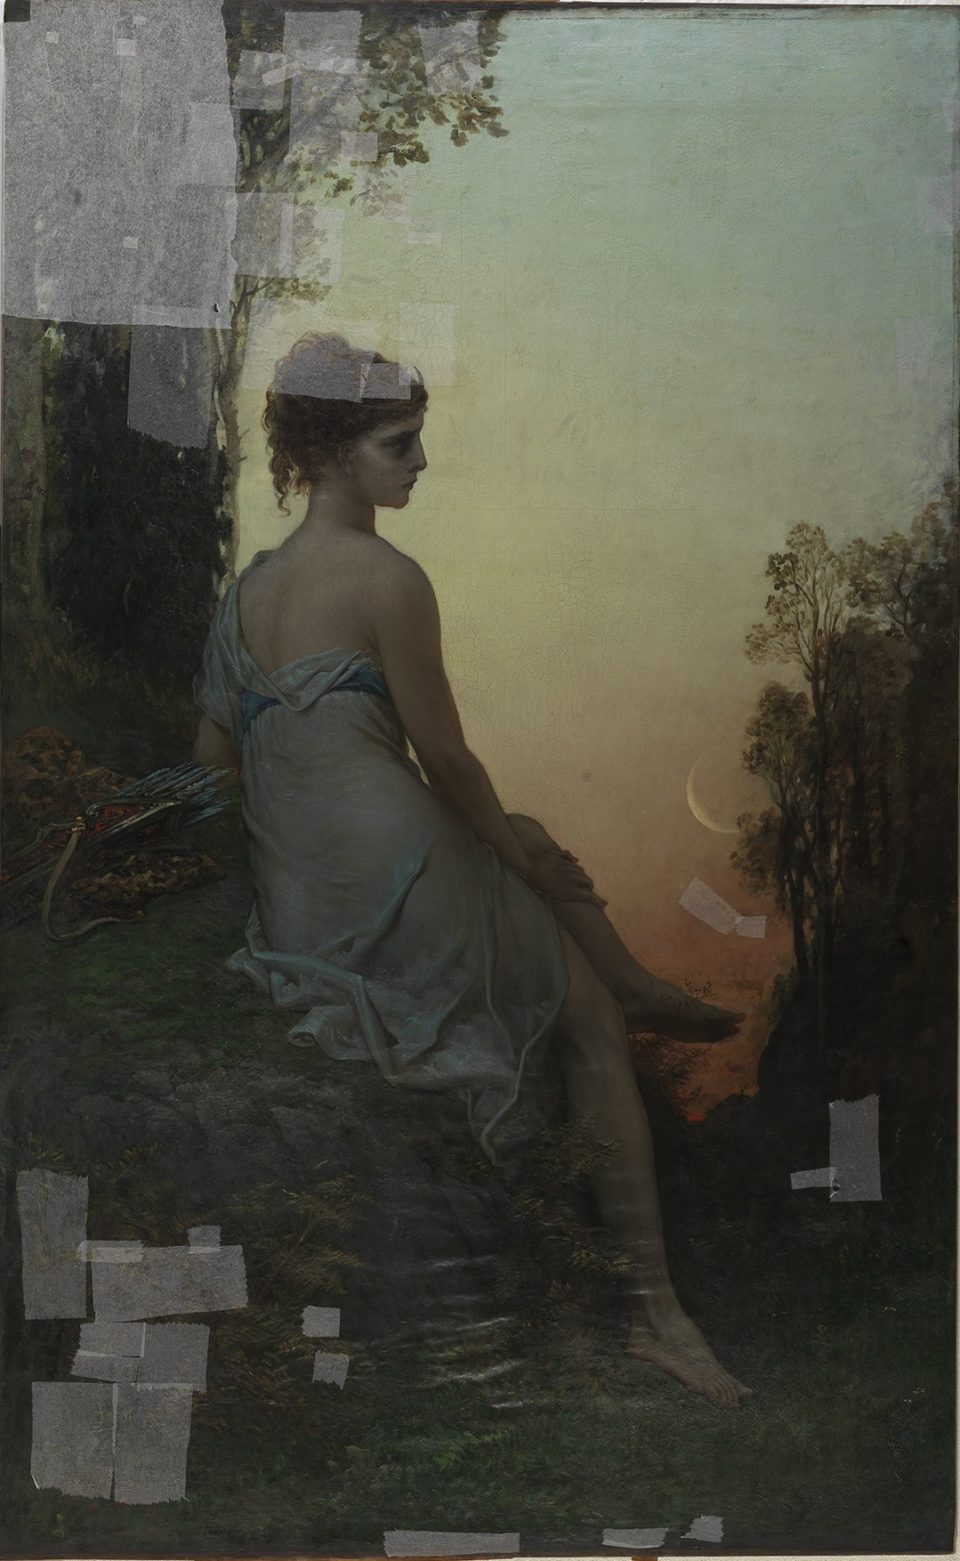 Gustave Doré, Diane chasseresse